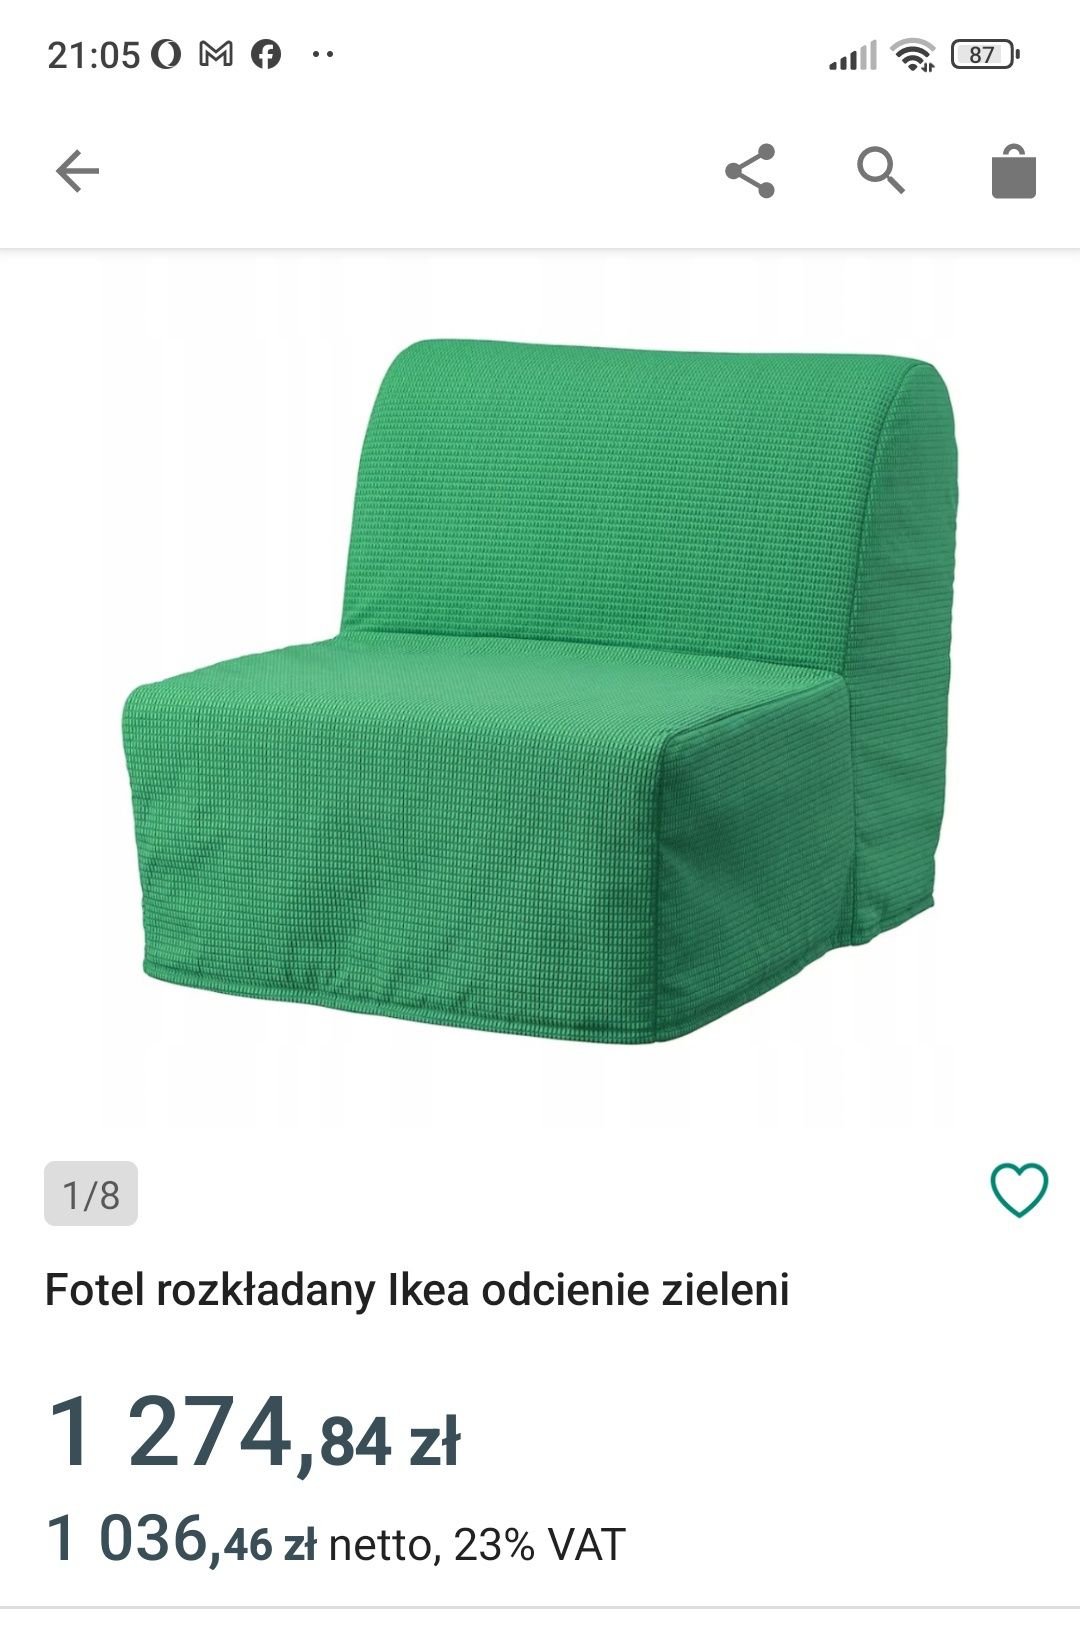 IKEA Lycksele Fotel rozkładany wygodny do siedzenia spania i rozkladan